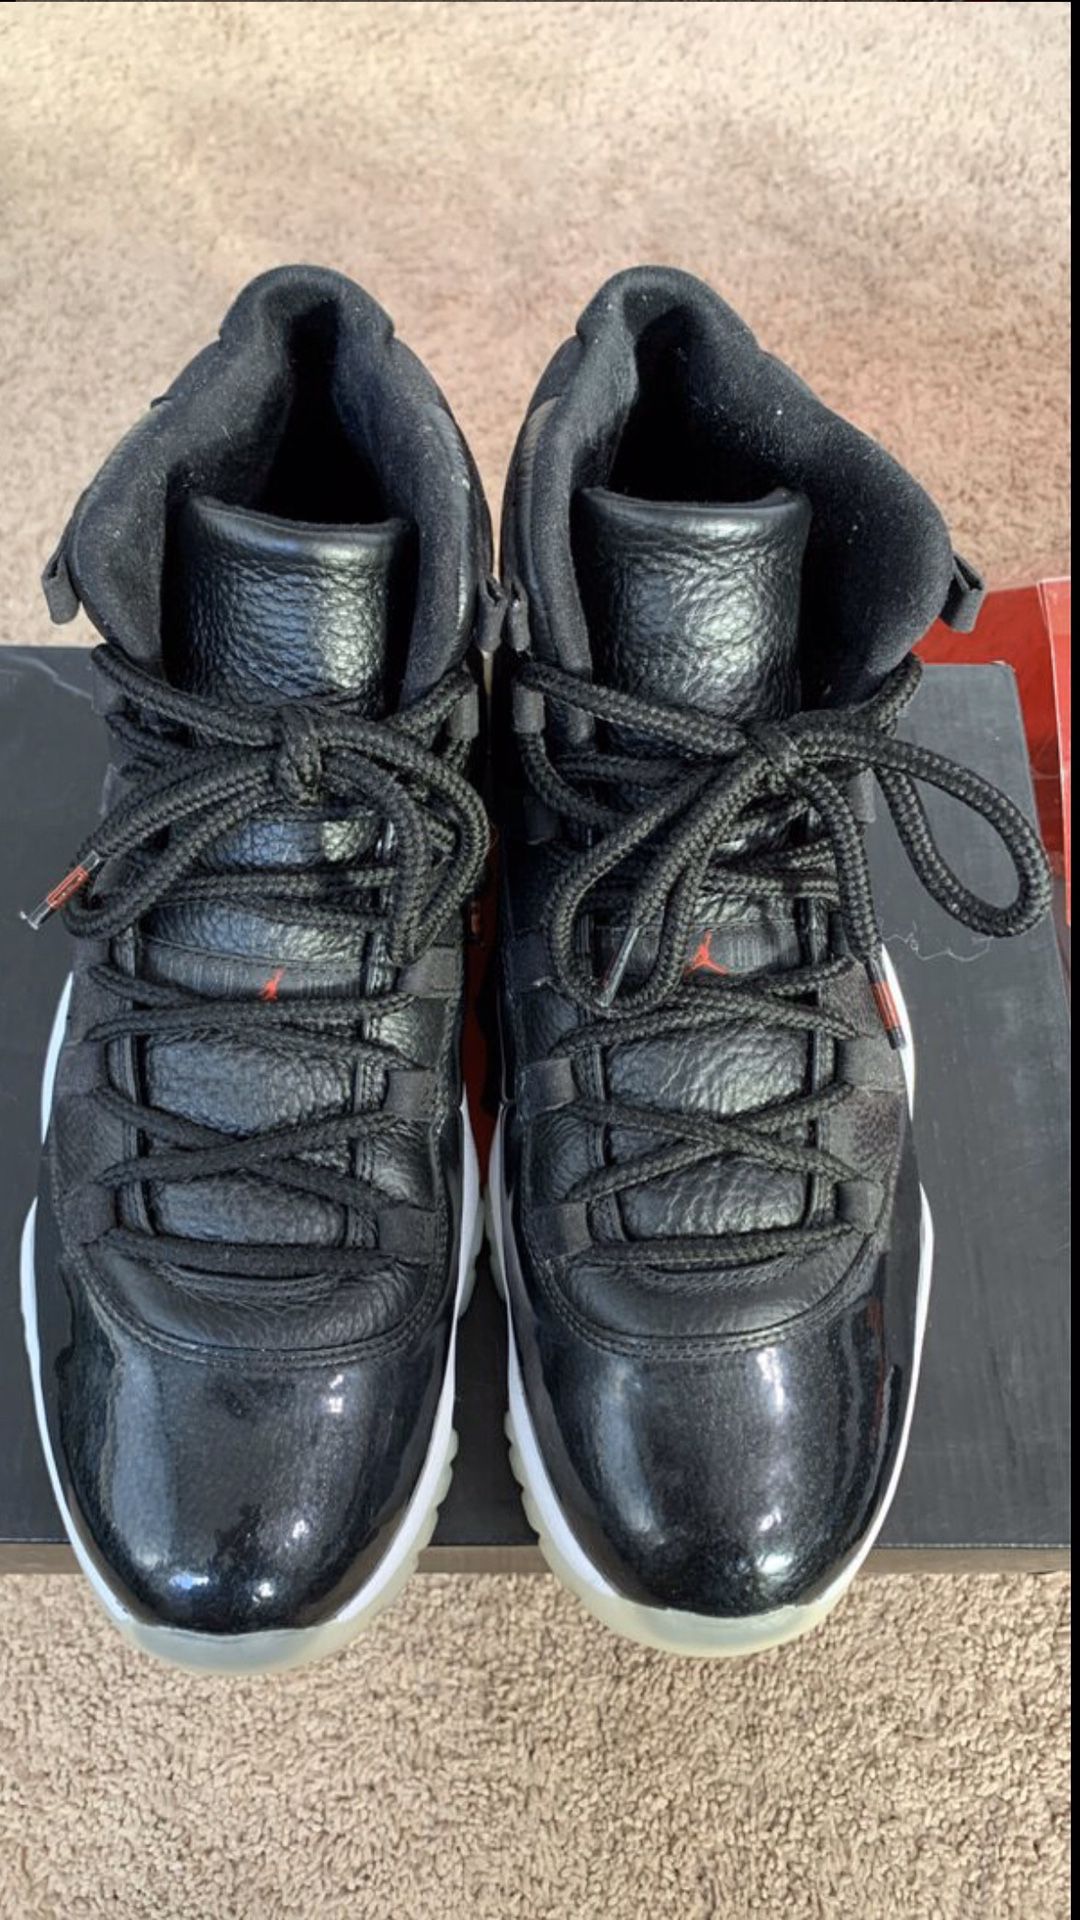 Nike Air Jordan Retro 11 72-10 size 13 VNDS